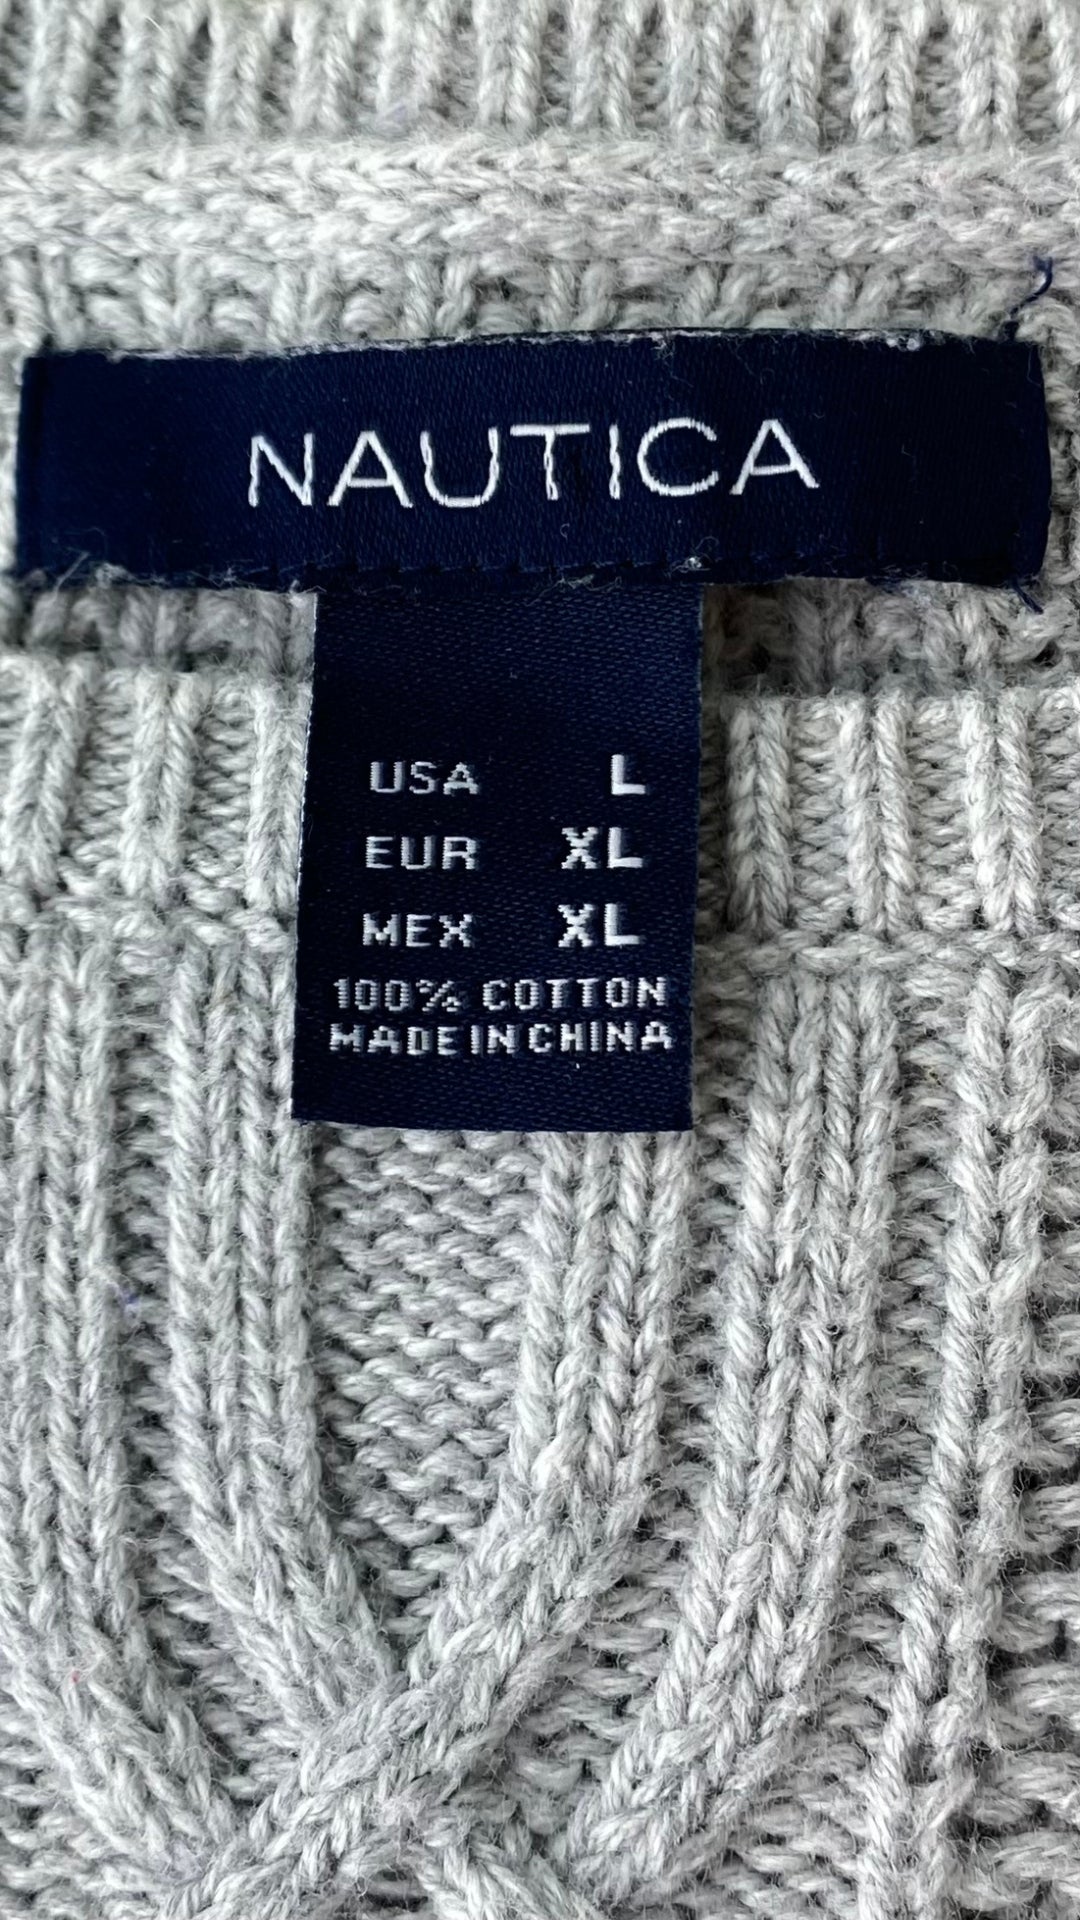 Chandail en tricot gris Nautica avec de magnifiques torsades aux manches et sur le devant. Vue de l'étiquette de marque, taille et composition.